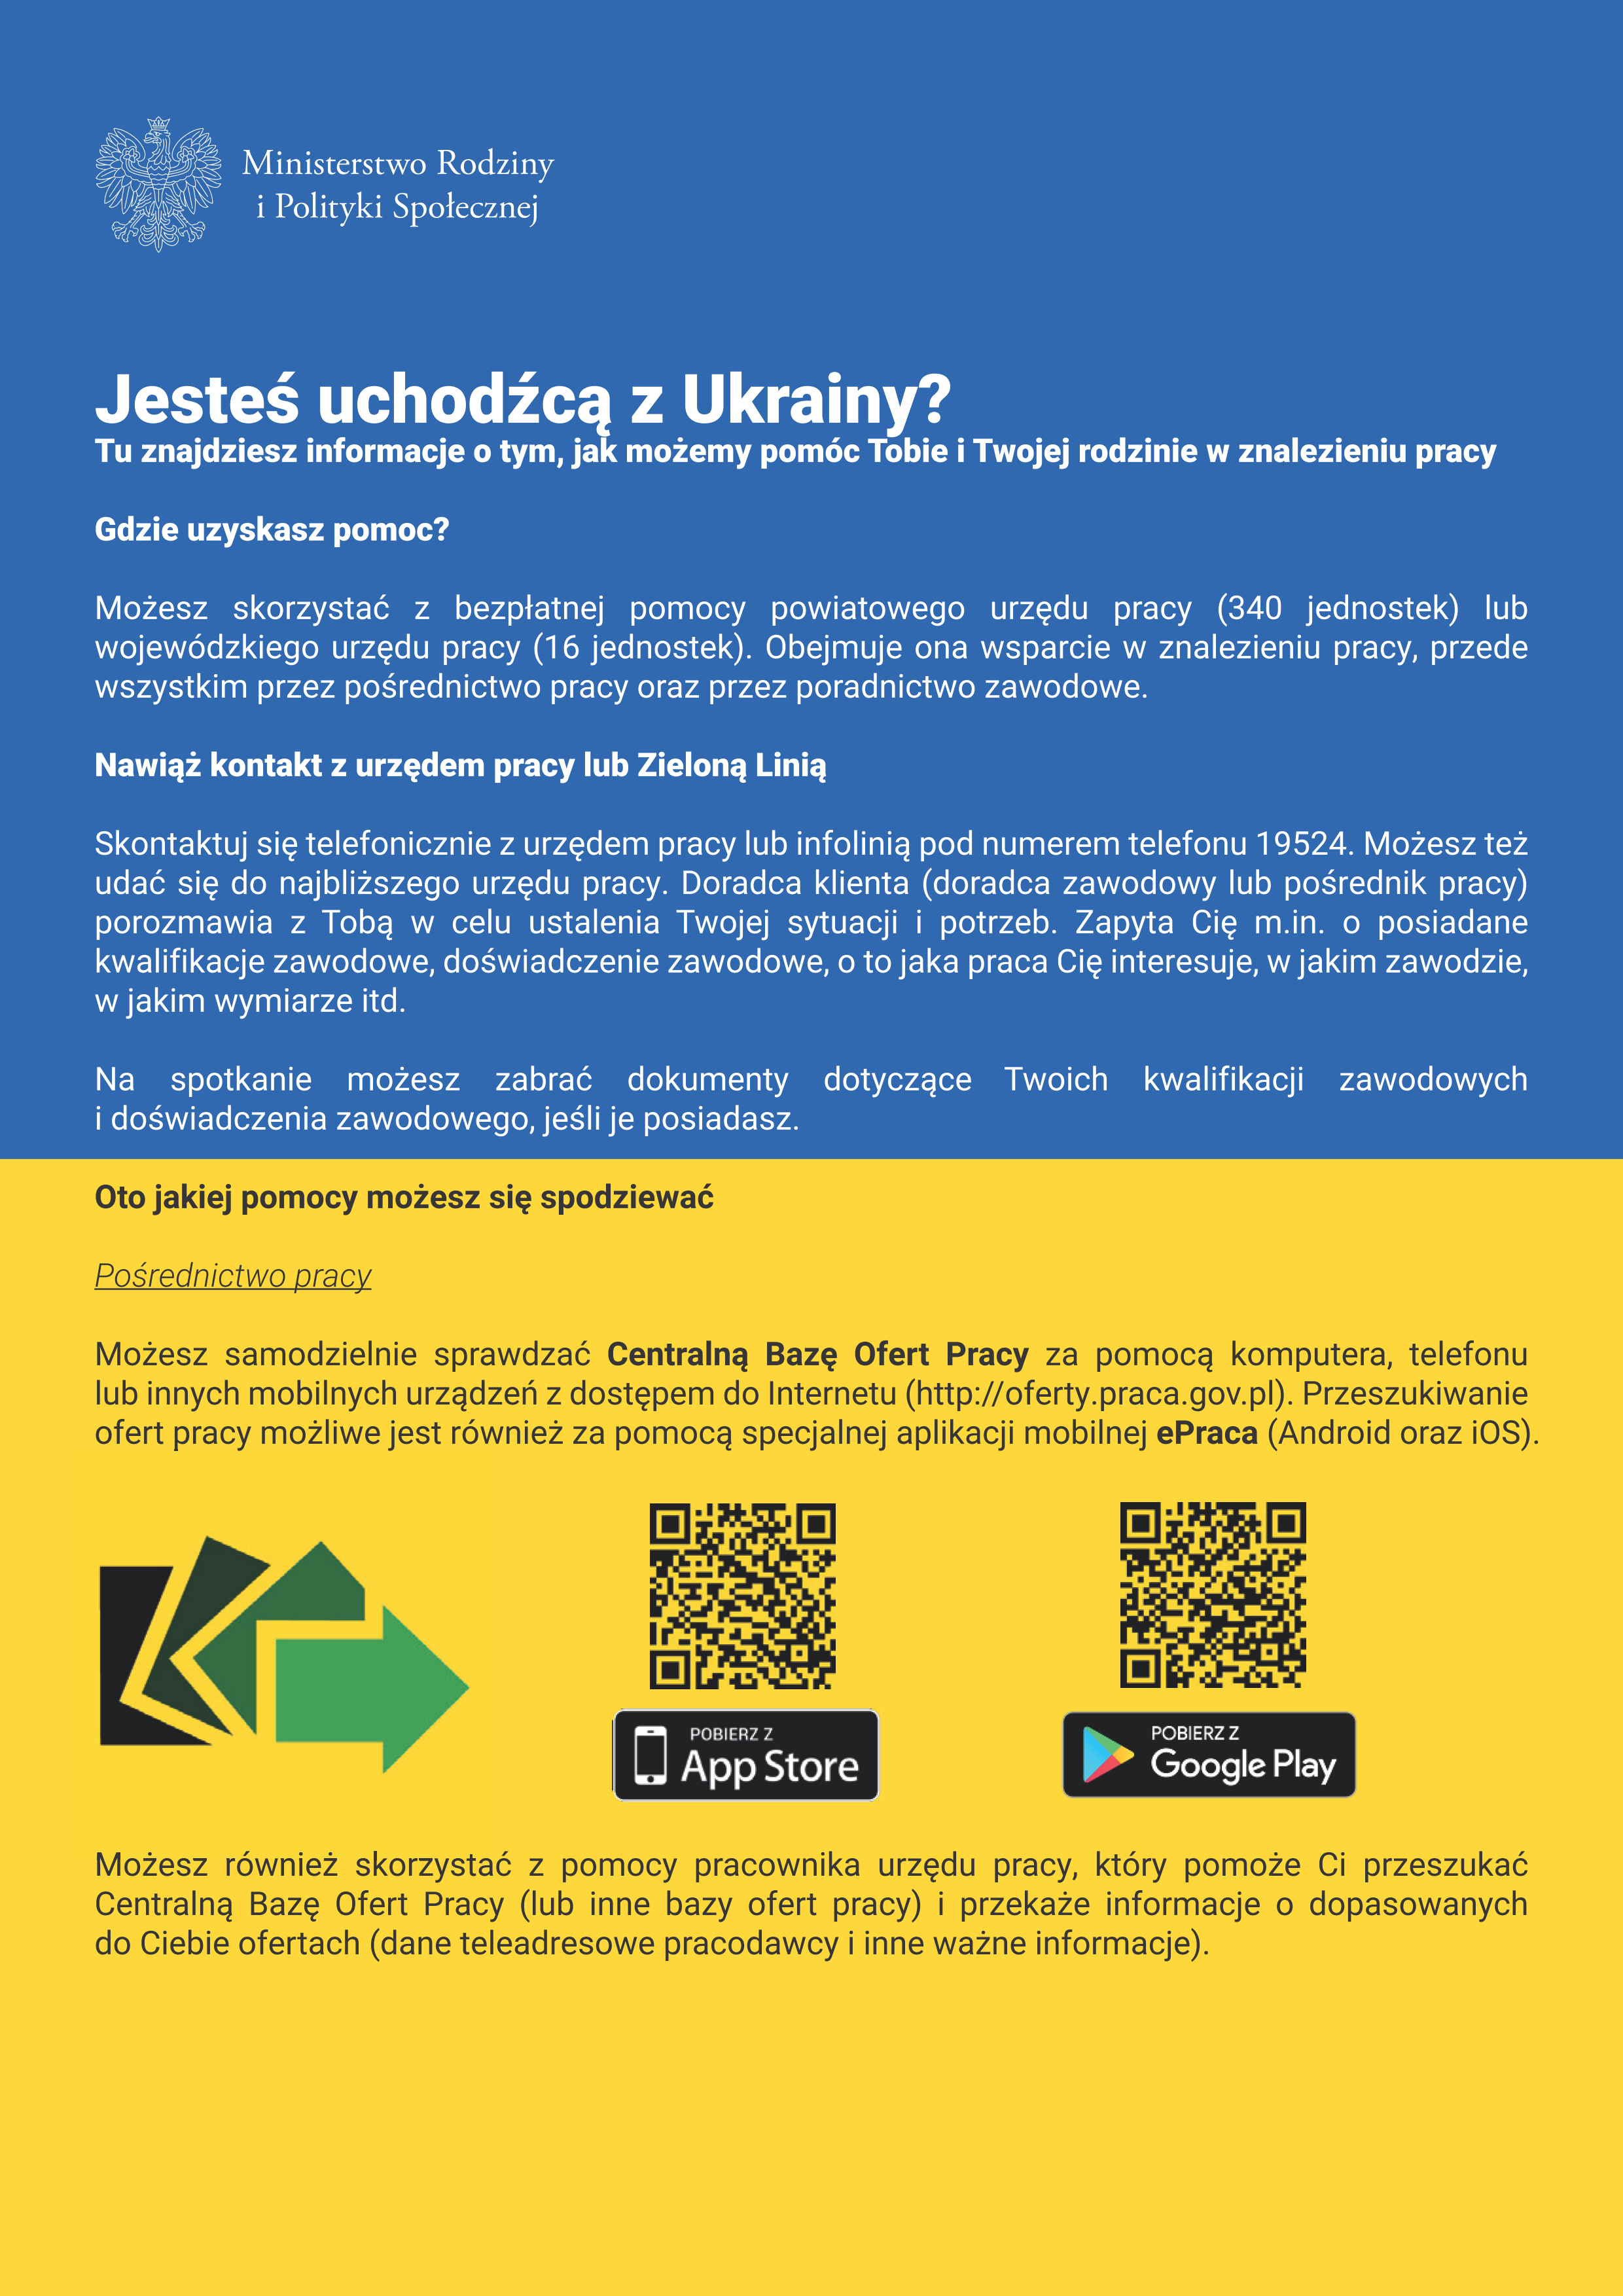 Ulotka PL 1 - Info dla osób z Ukrainy na stronę www